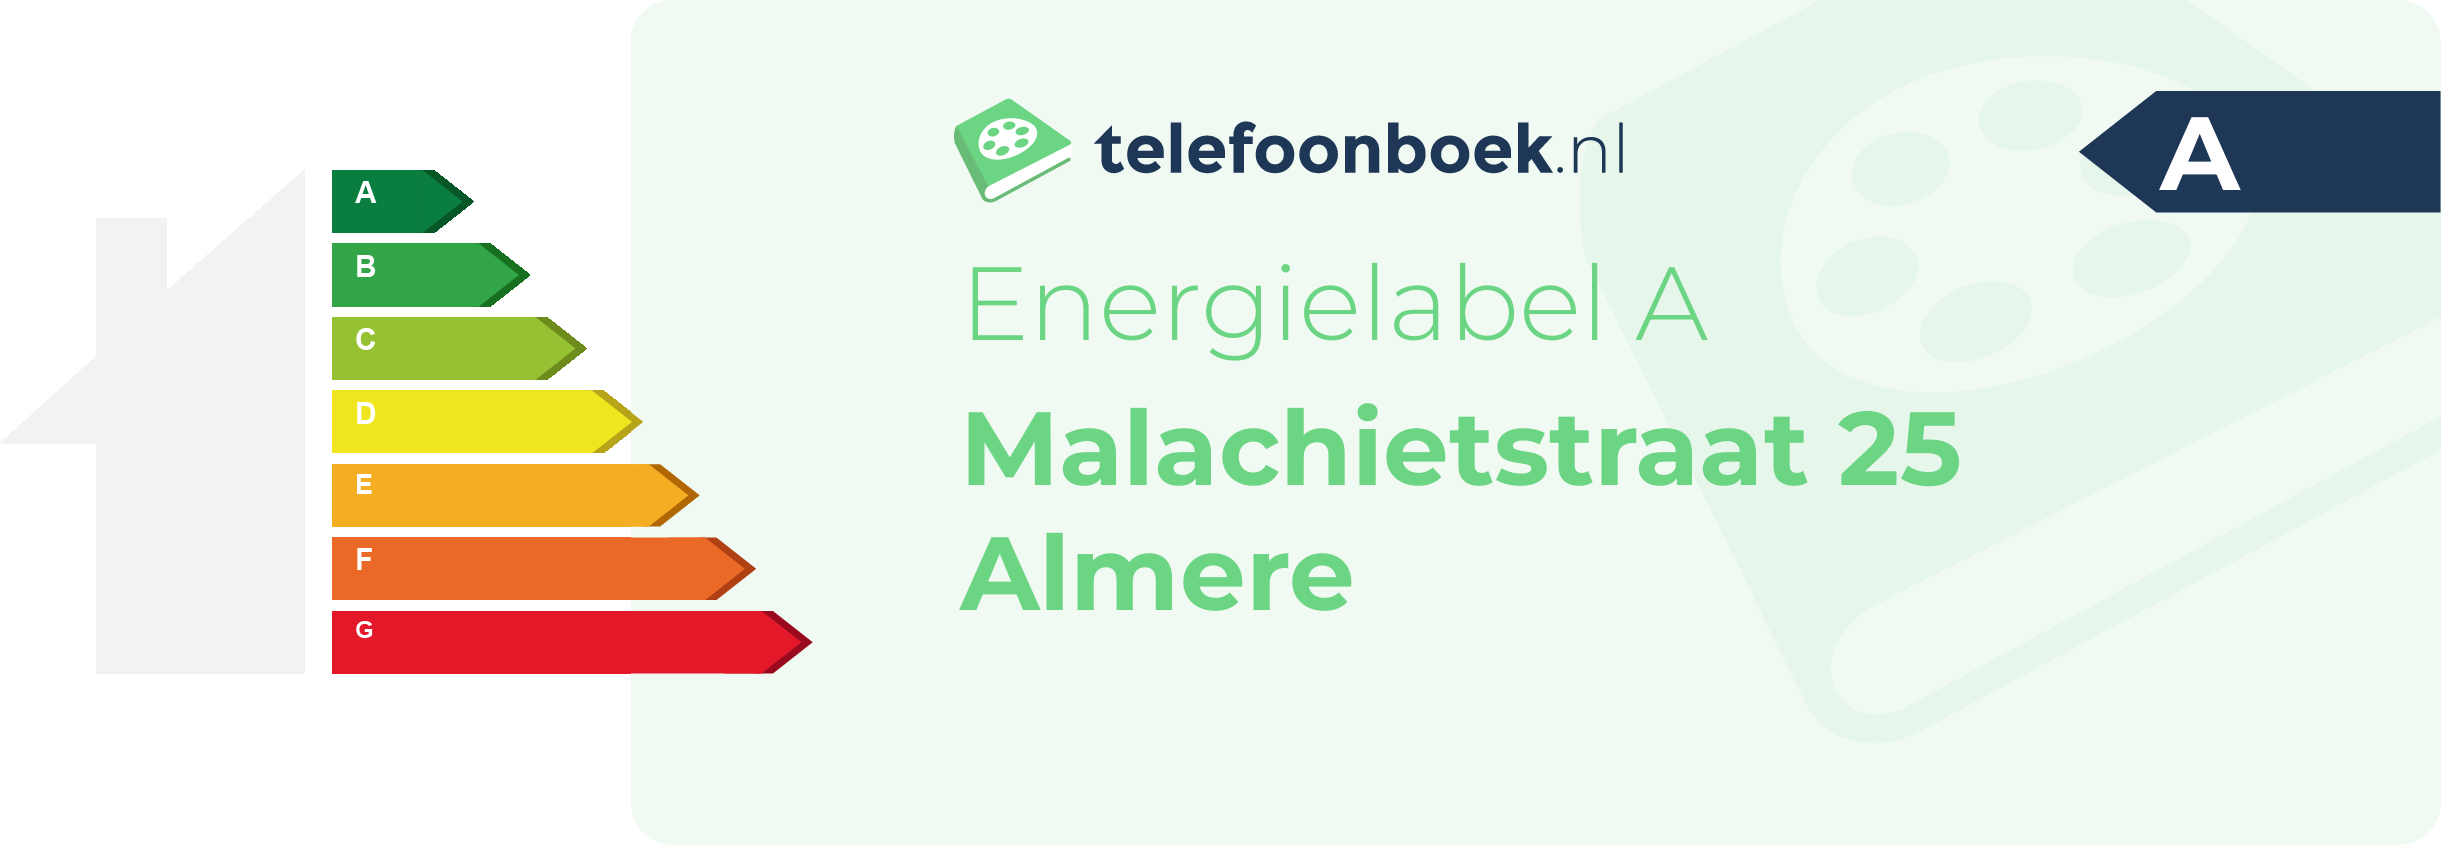 Energielabel Malachietstraat 25 Almere